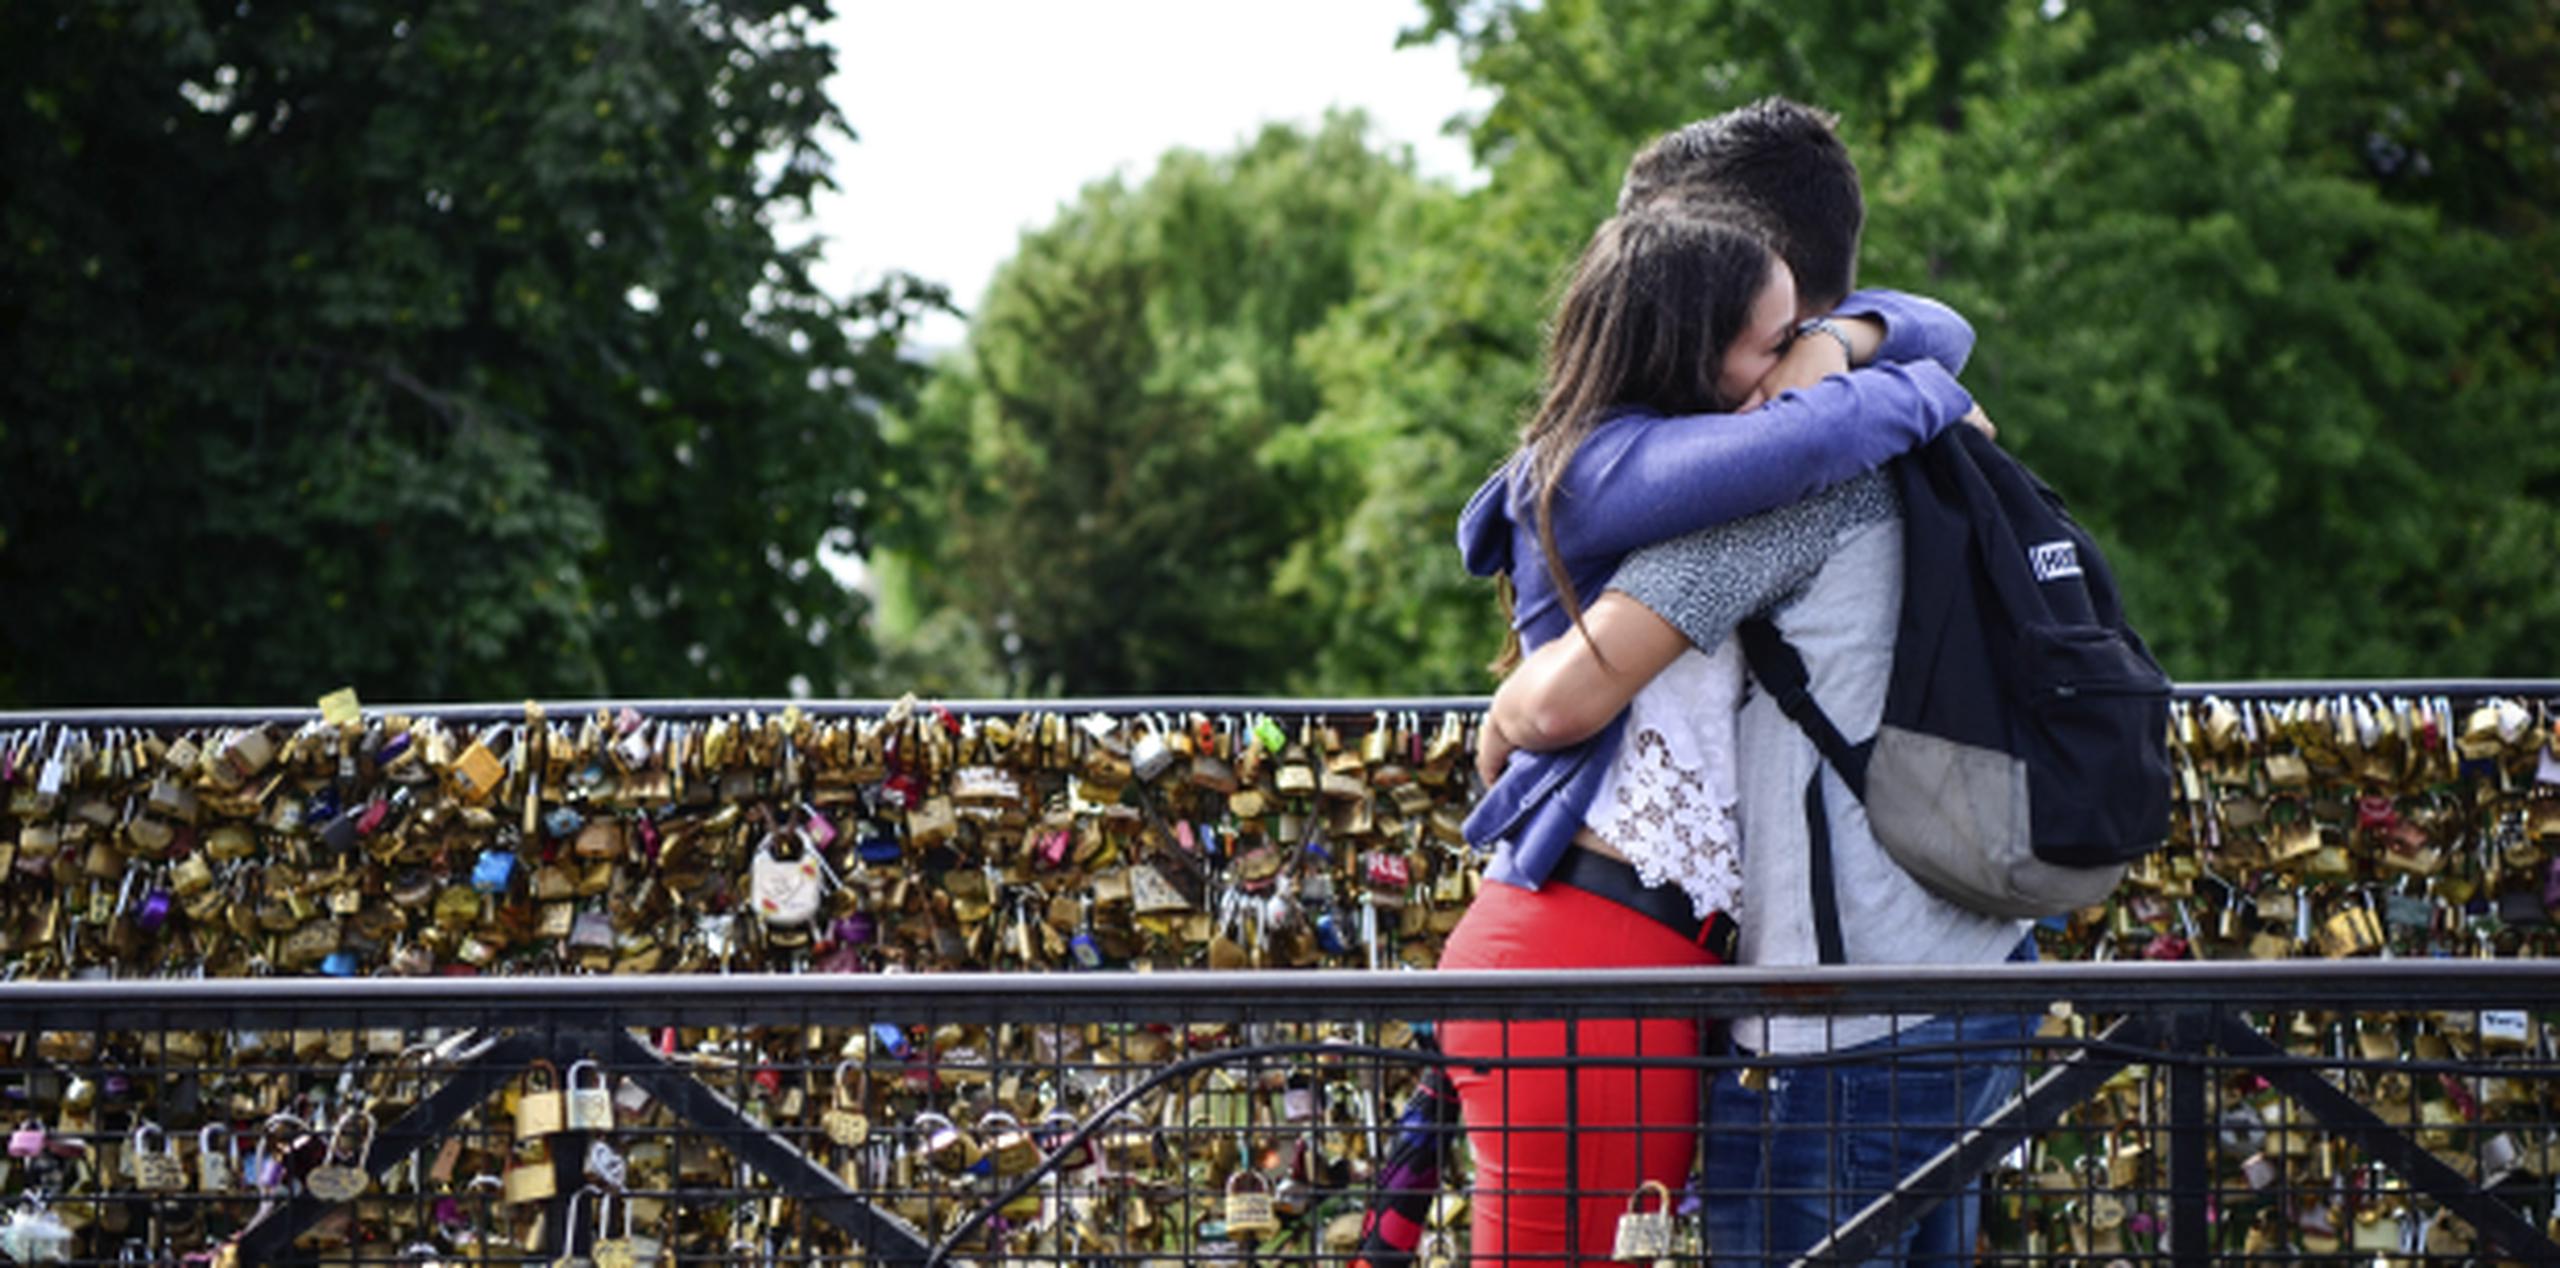 Las parejas llegan a puentes del río Sena, en París, y colocan candados en señal de su amor, práctica que es desaprobada por el gobierno. (EFE)